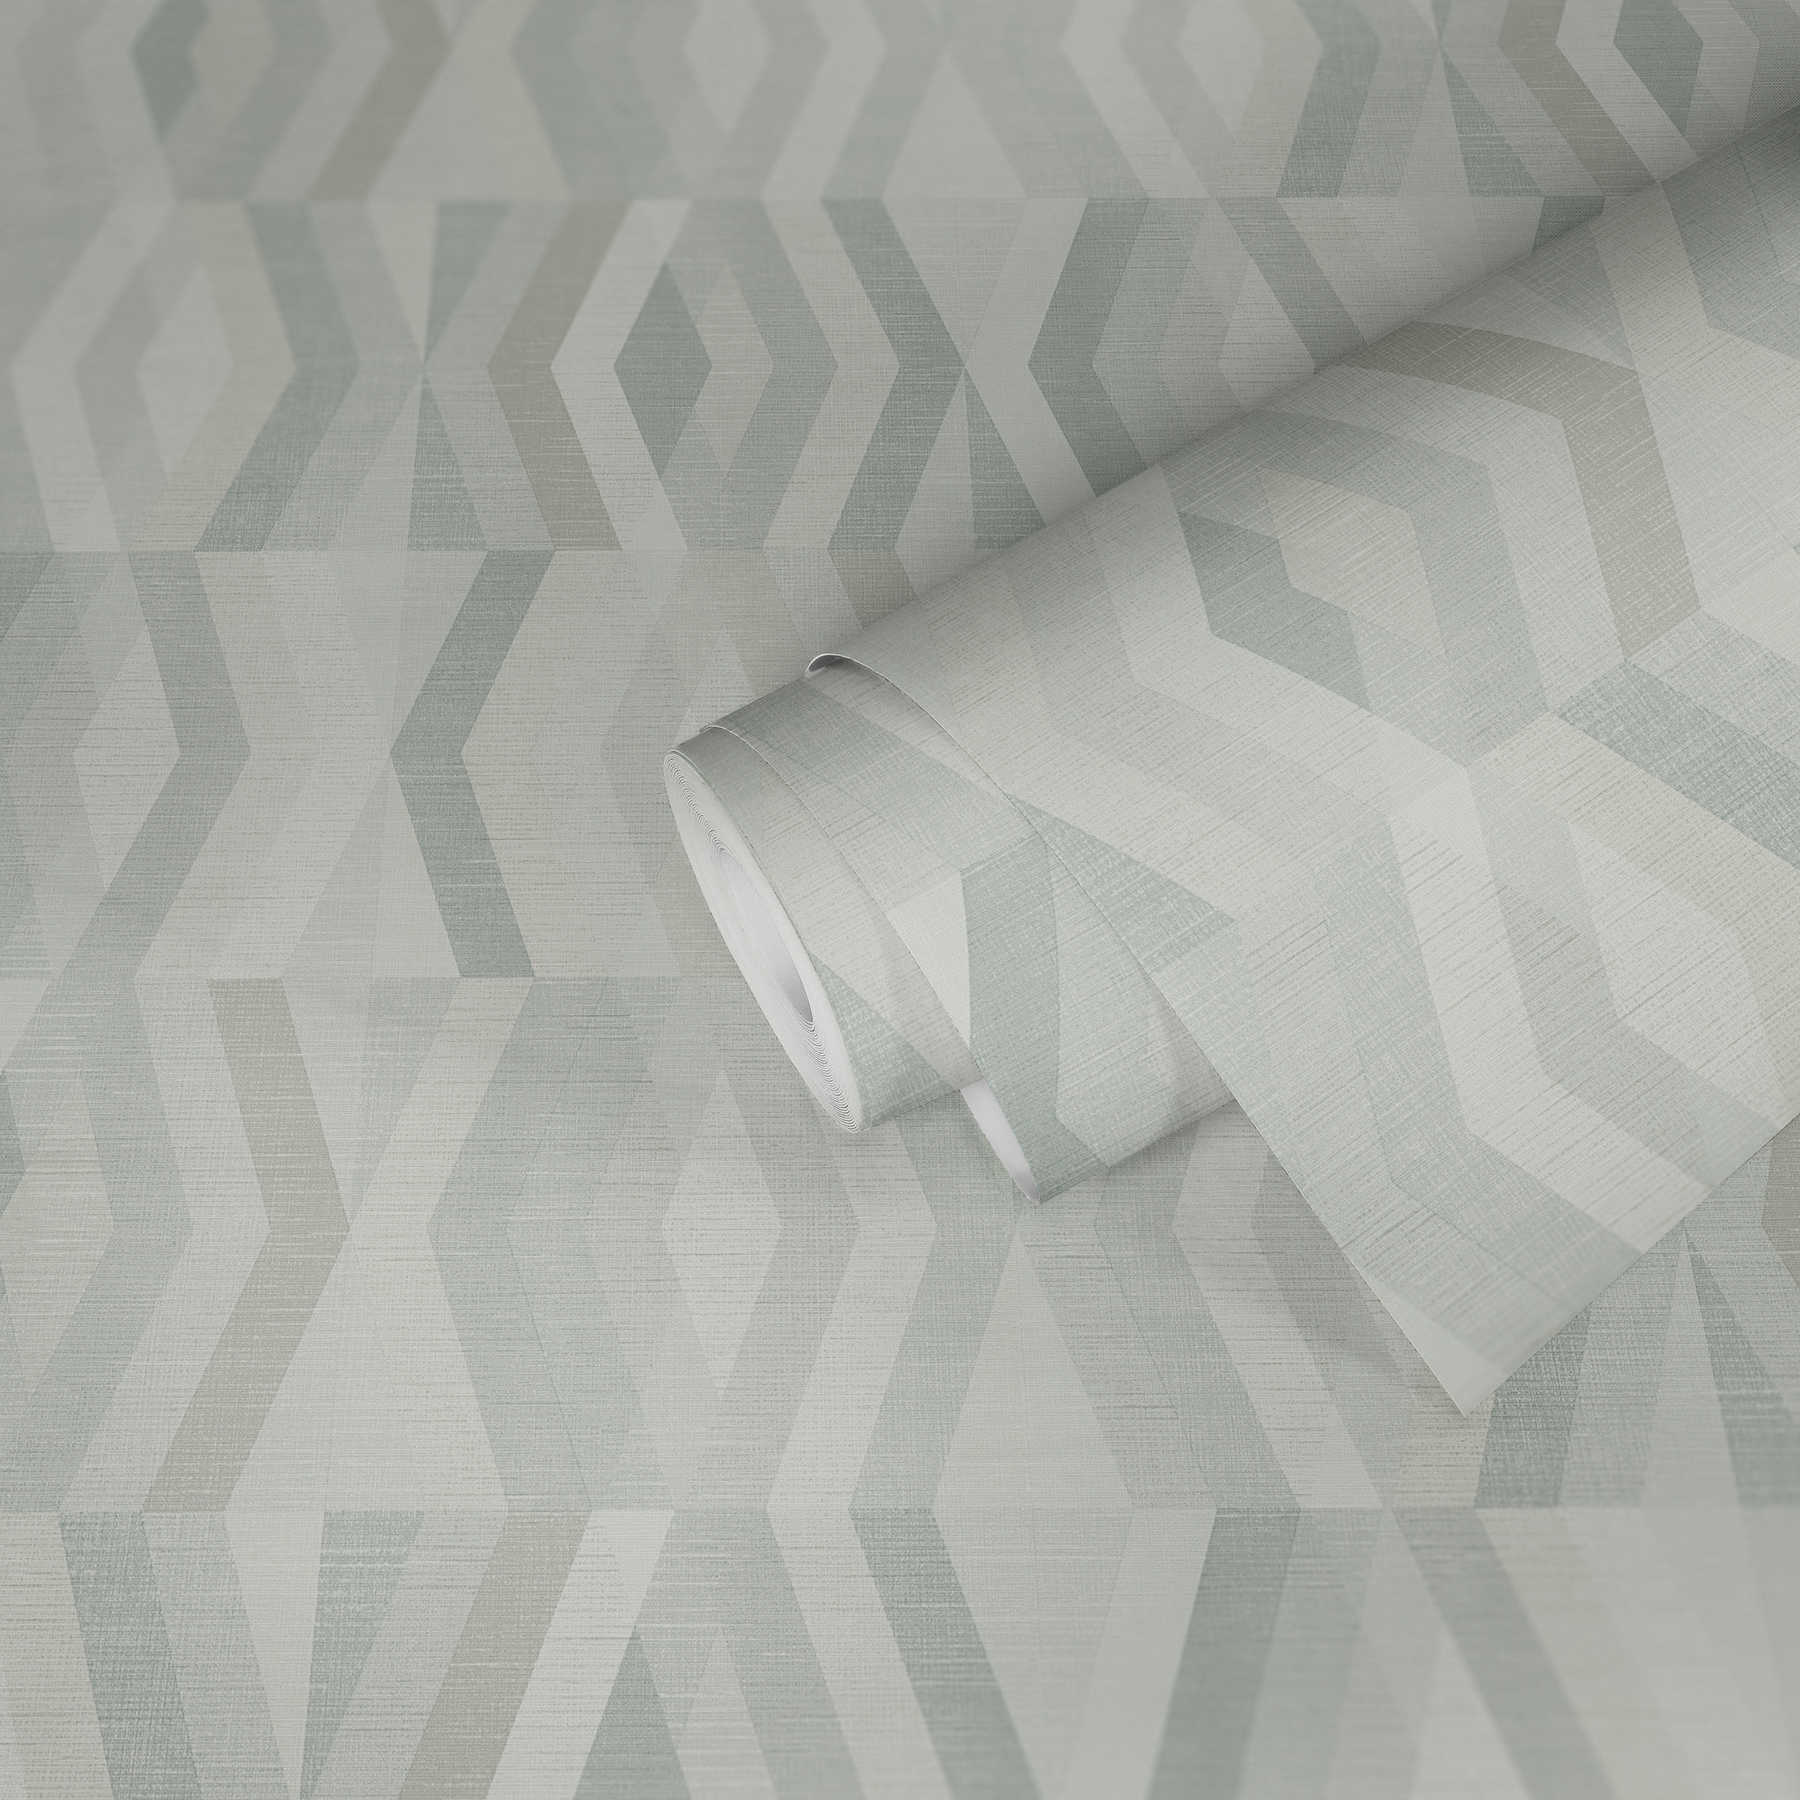             Papier peint style scandinave à motifs géométriques - gris, beige
        